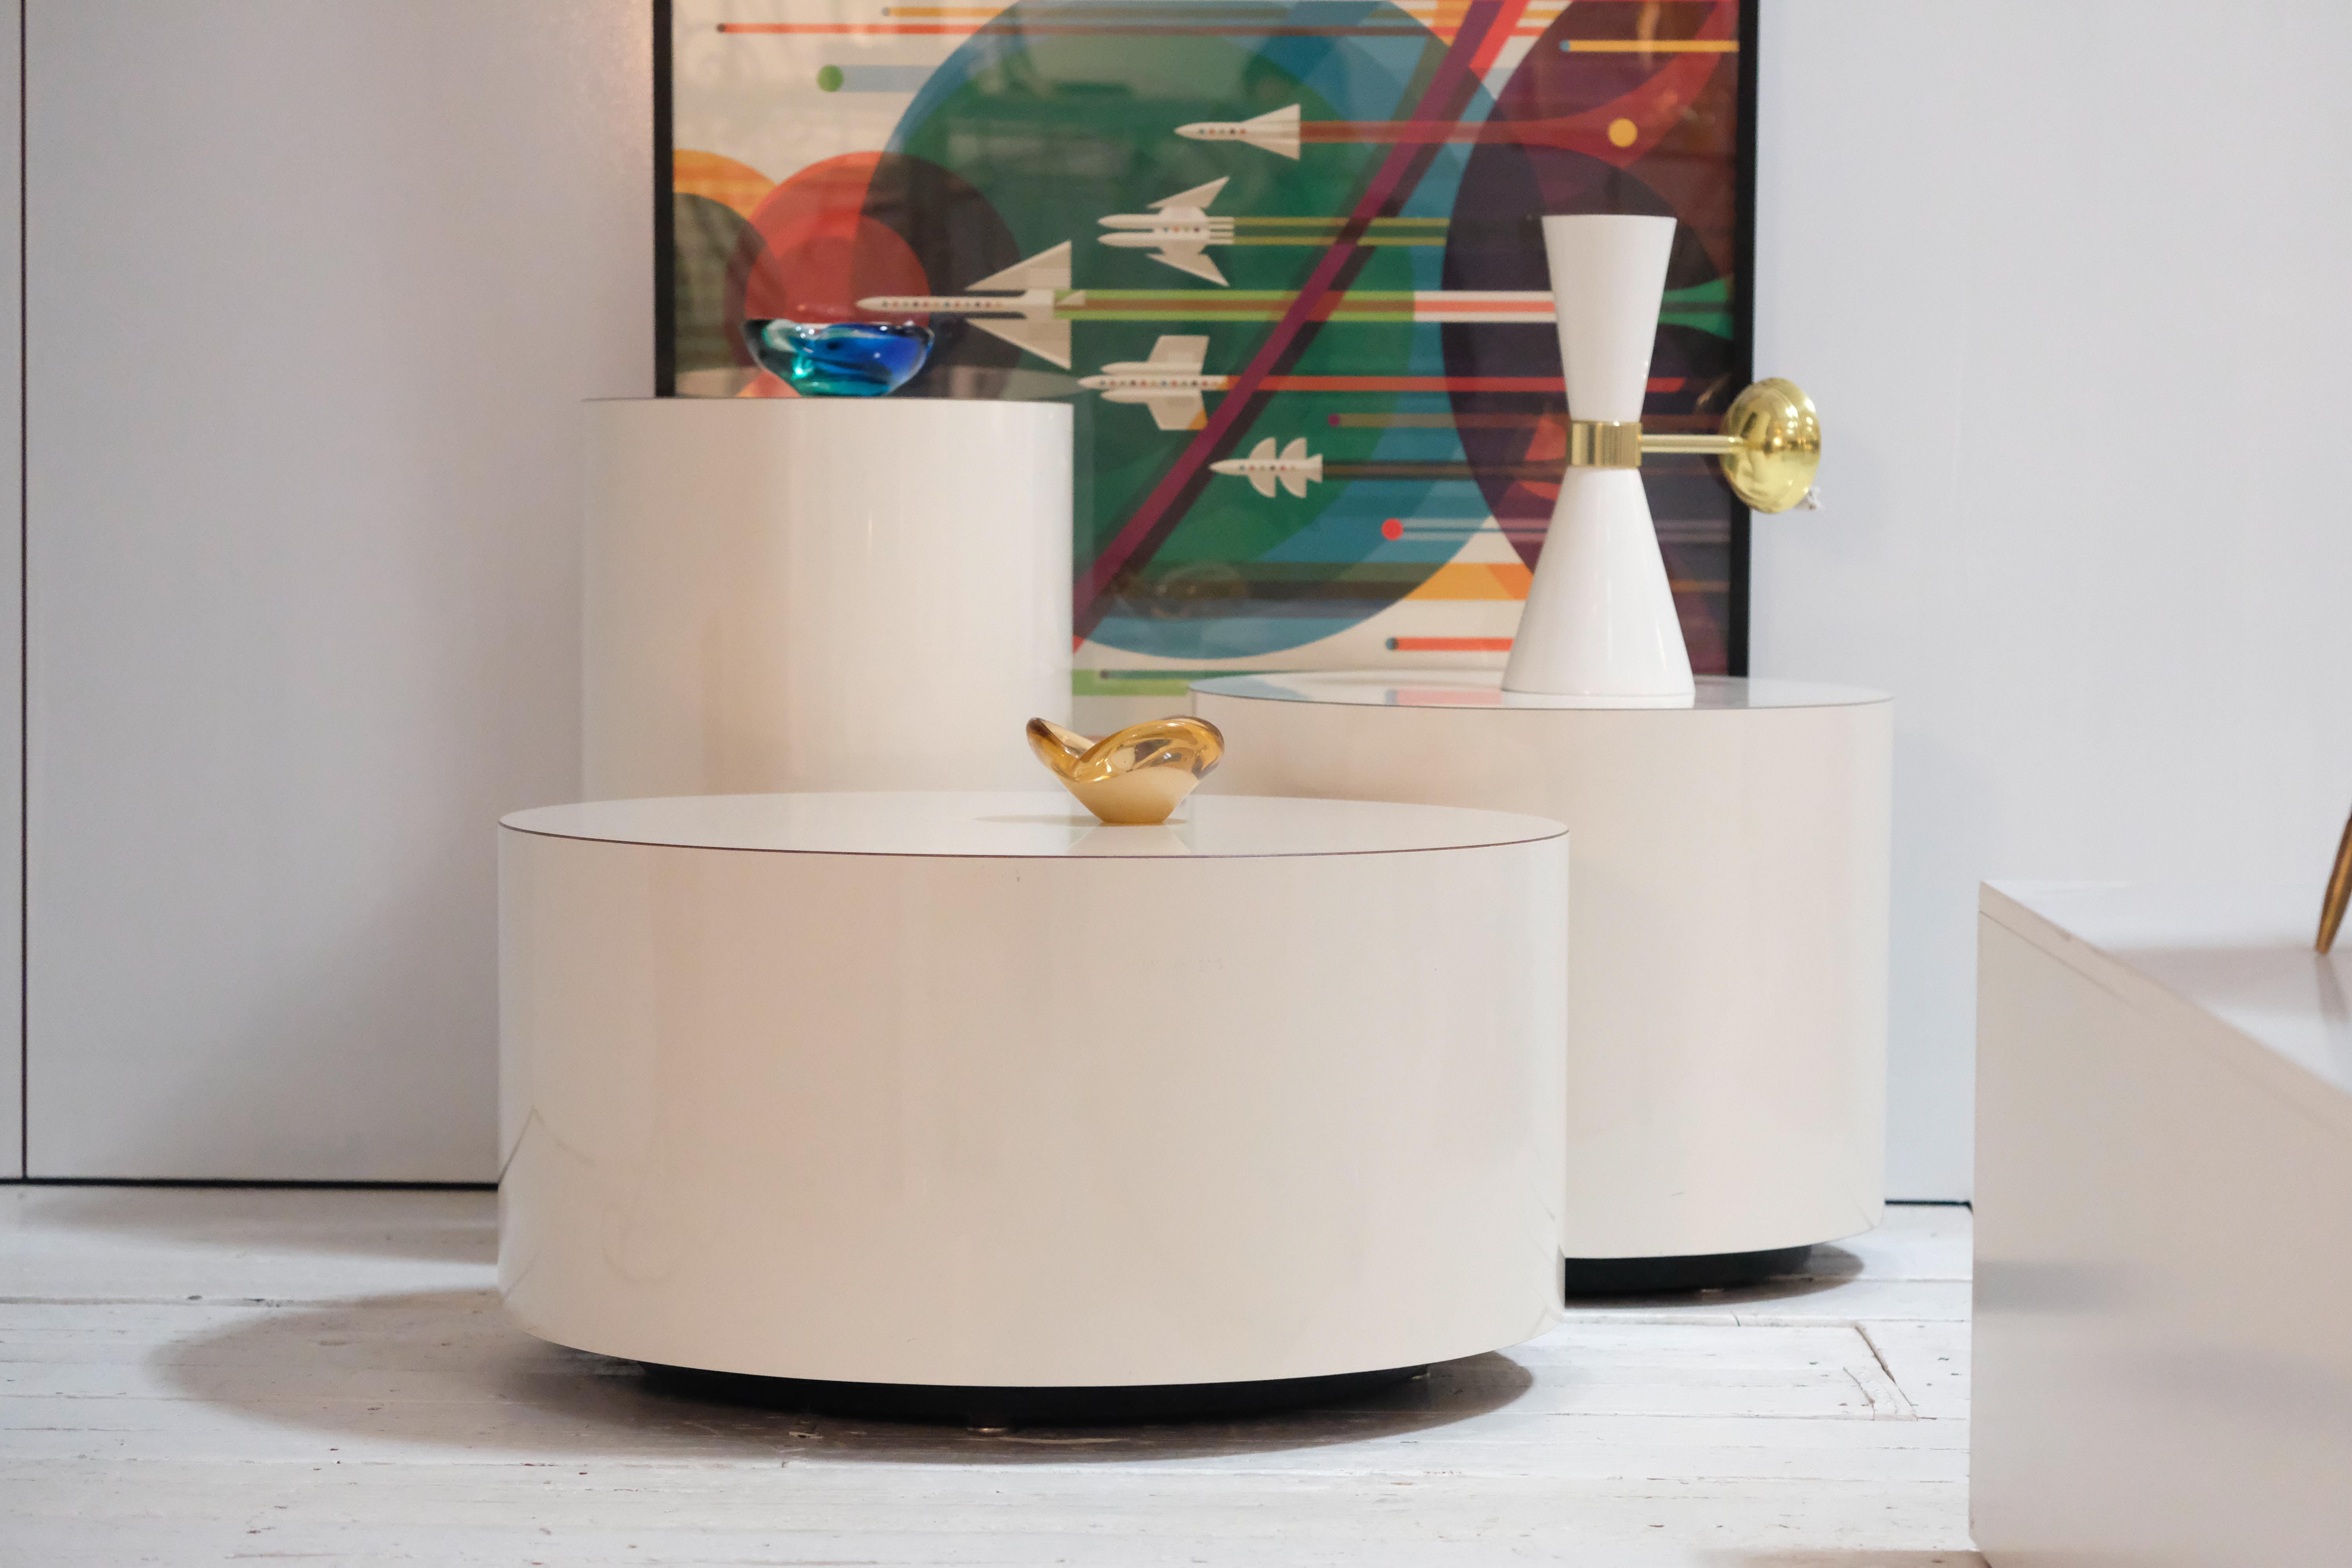 Luna High Gloss Laminate Collection - Couchtisch / Beistelltische / Beistelltische

Die Luna Collection mit ihren vom Mond inspirierten Tischen bietet vielseitige Stücke, die als Beistelltische oder Couchtische für das Wohnzimmer dienen. Die in